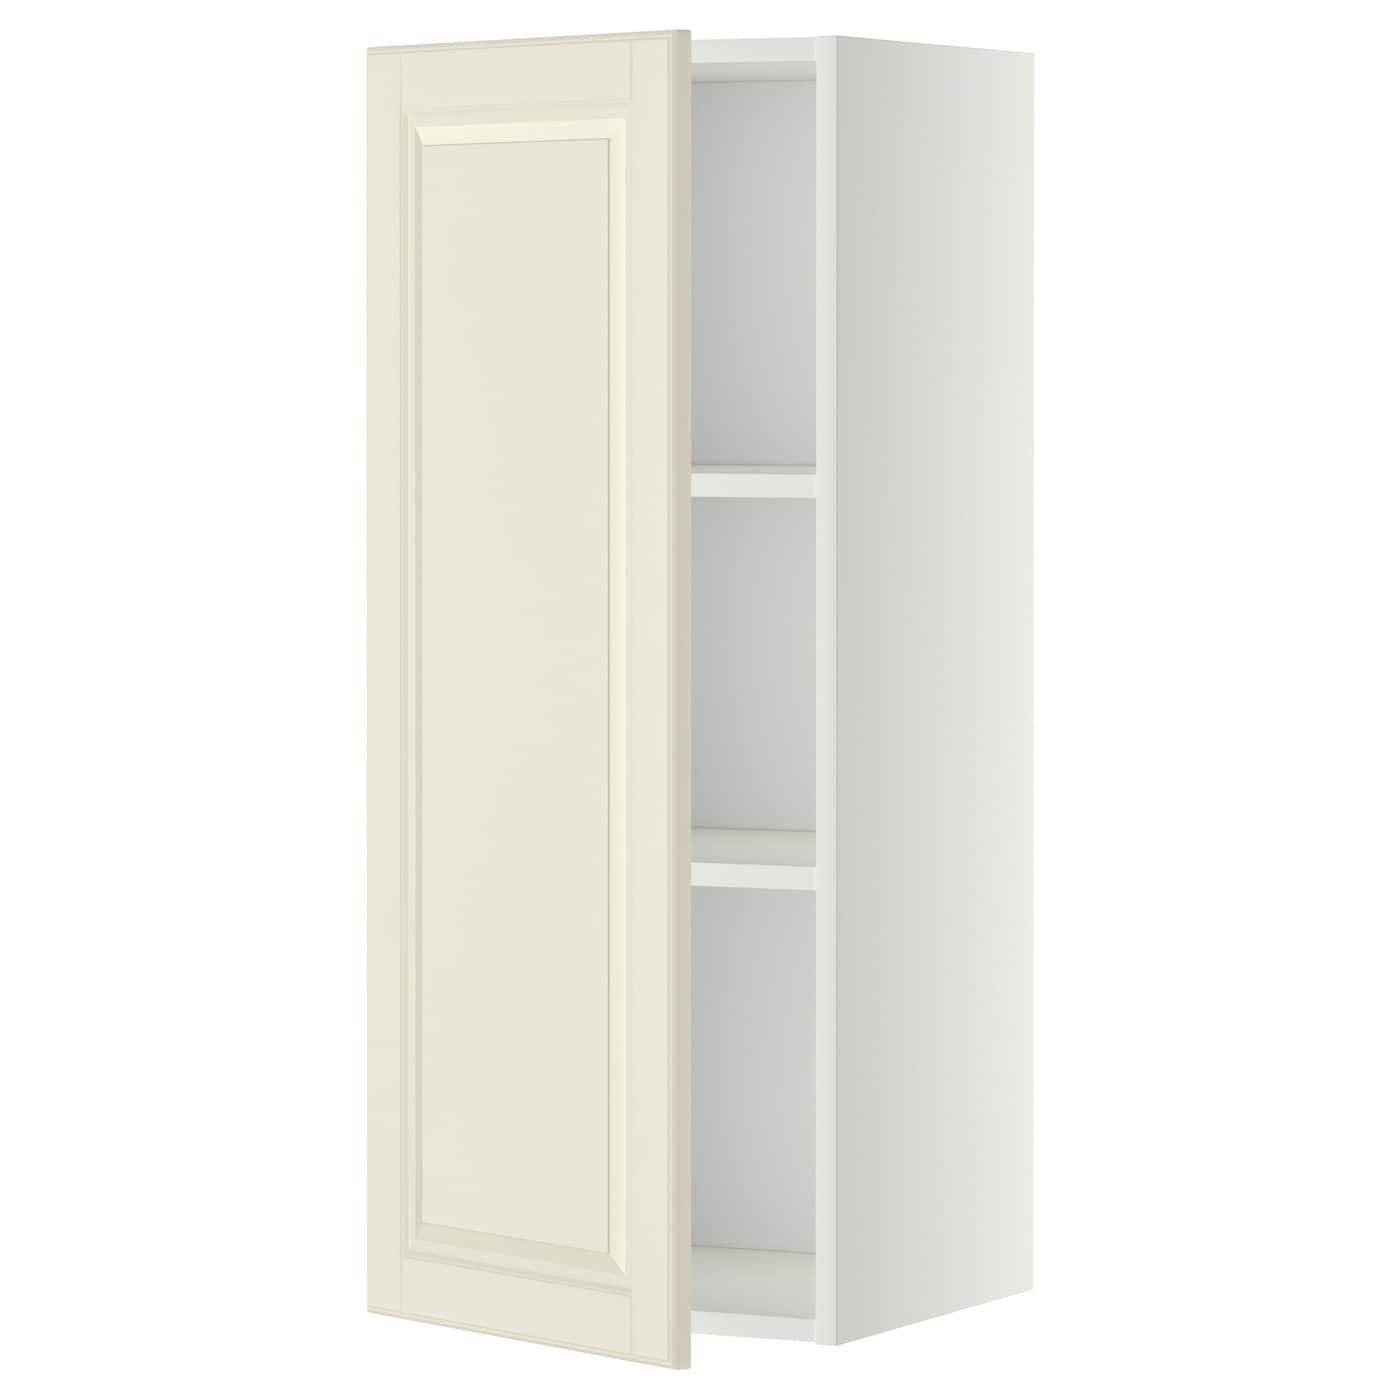 Навесной шкаф с полкой - METOD IKEA/ МЕТОД ИКЕА, 100х40 см, белый/кремовый